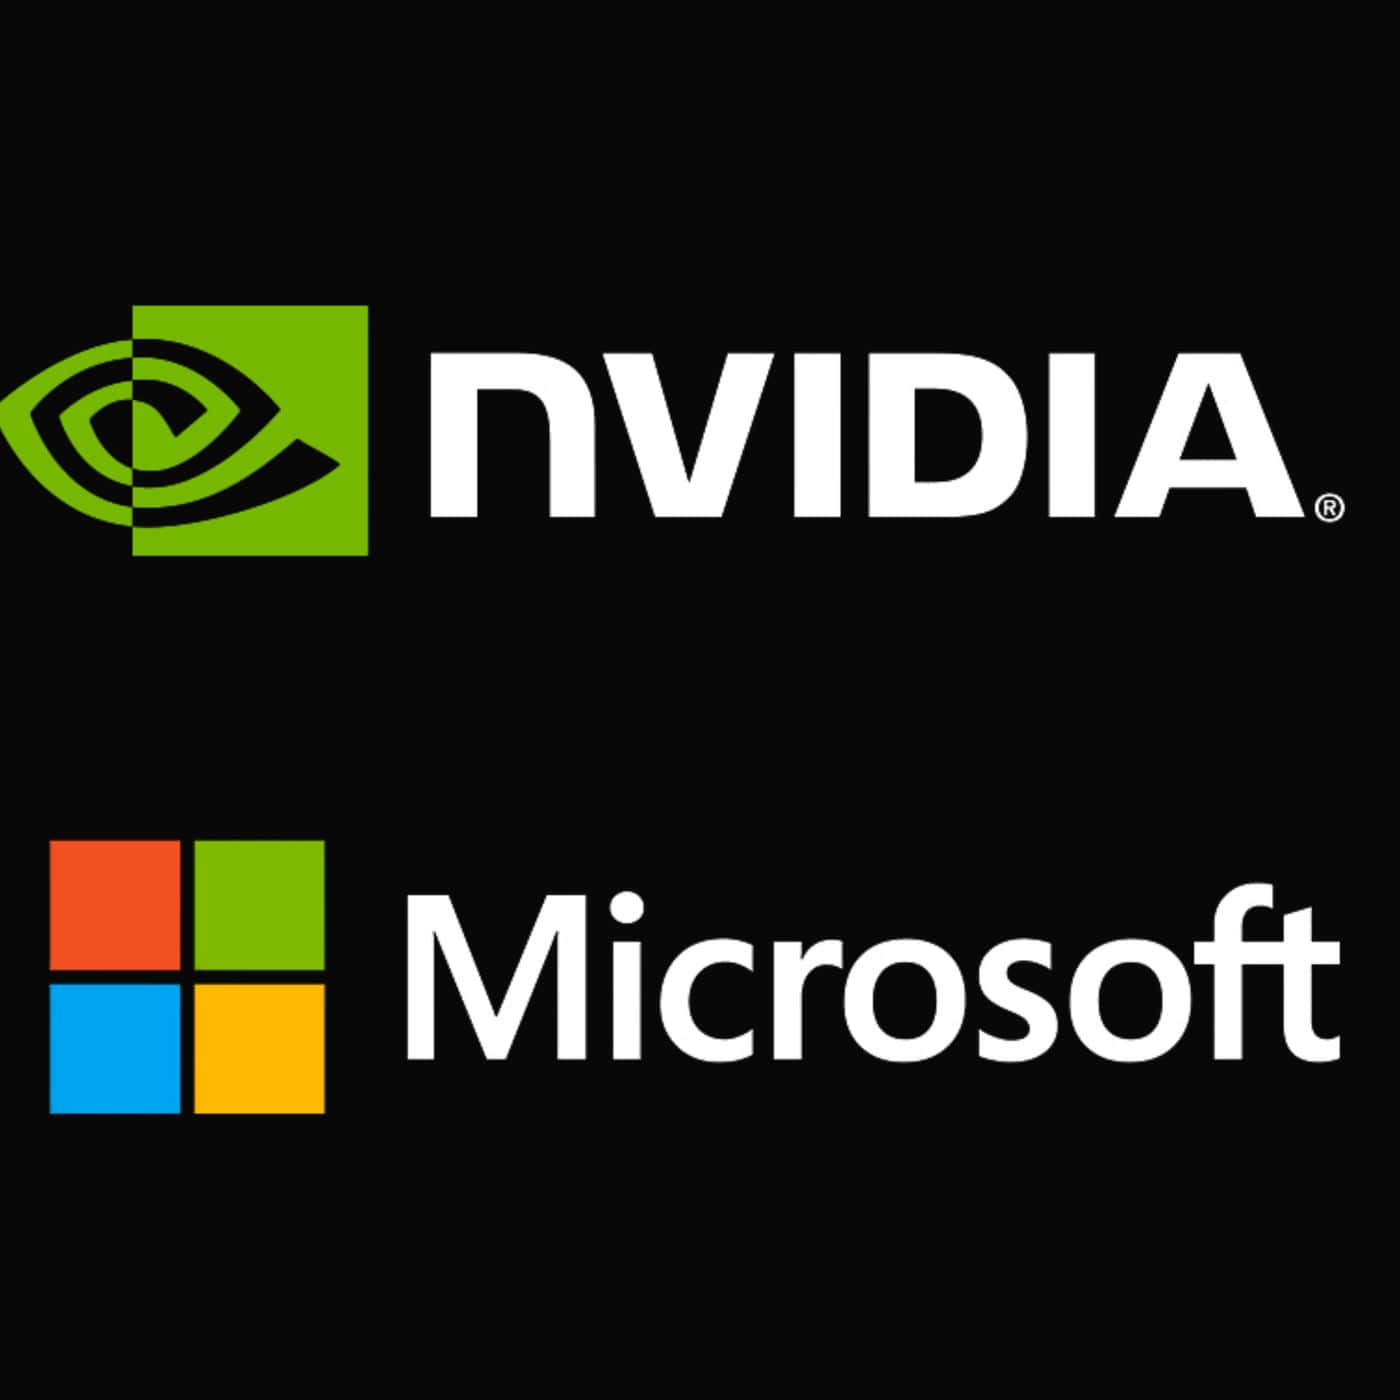 Nvidiaund Microsoft-logos Auf Schwarzem Hintergrund